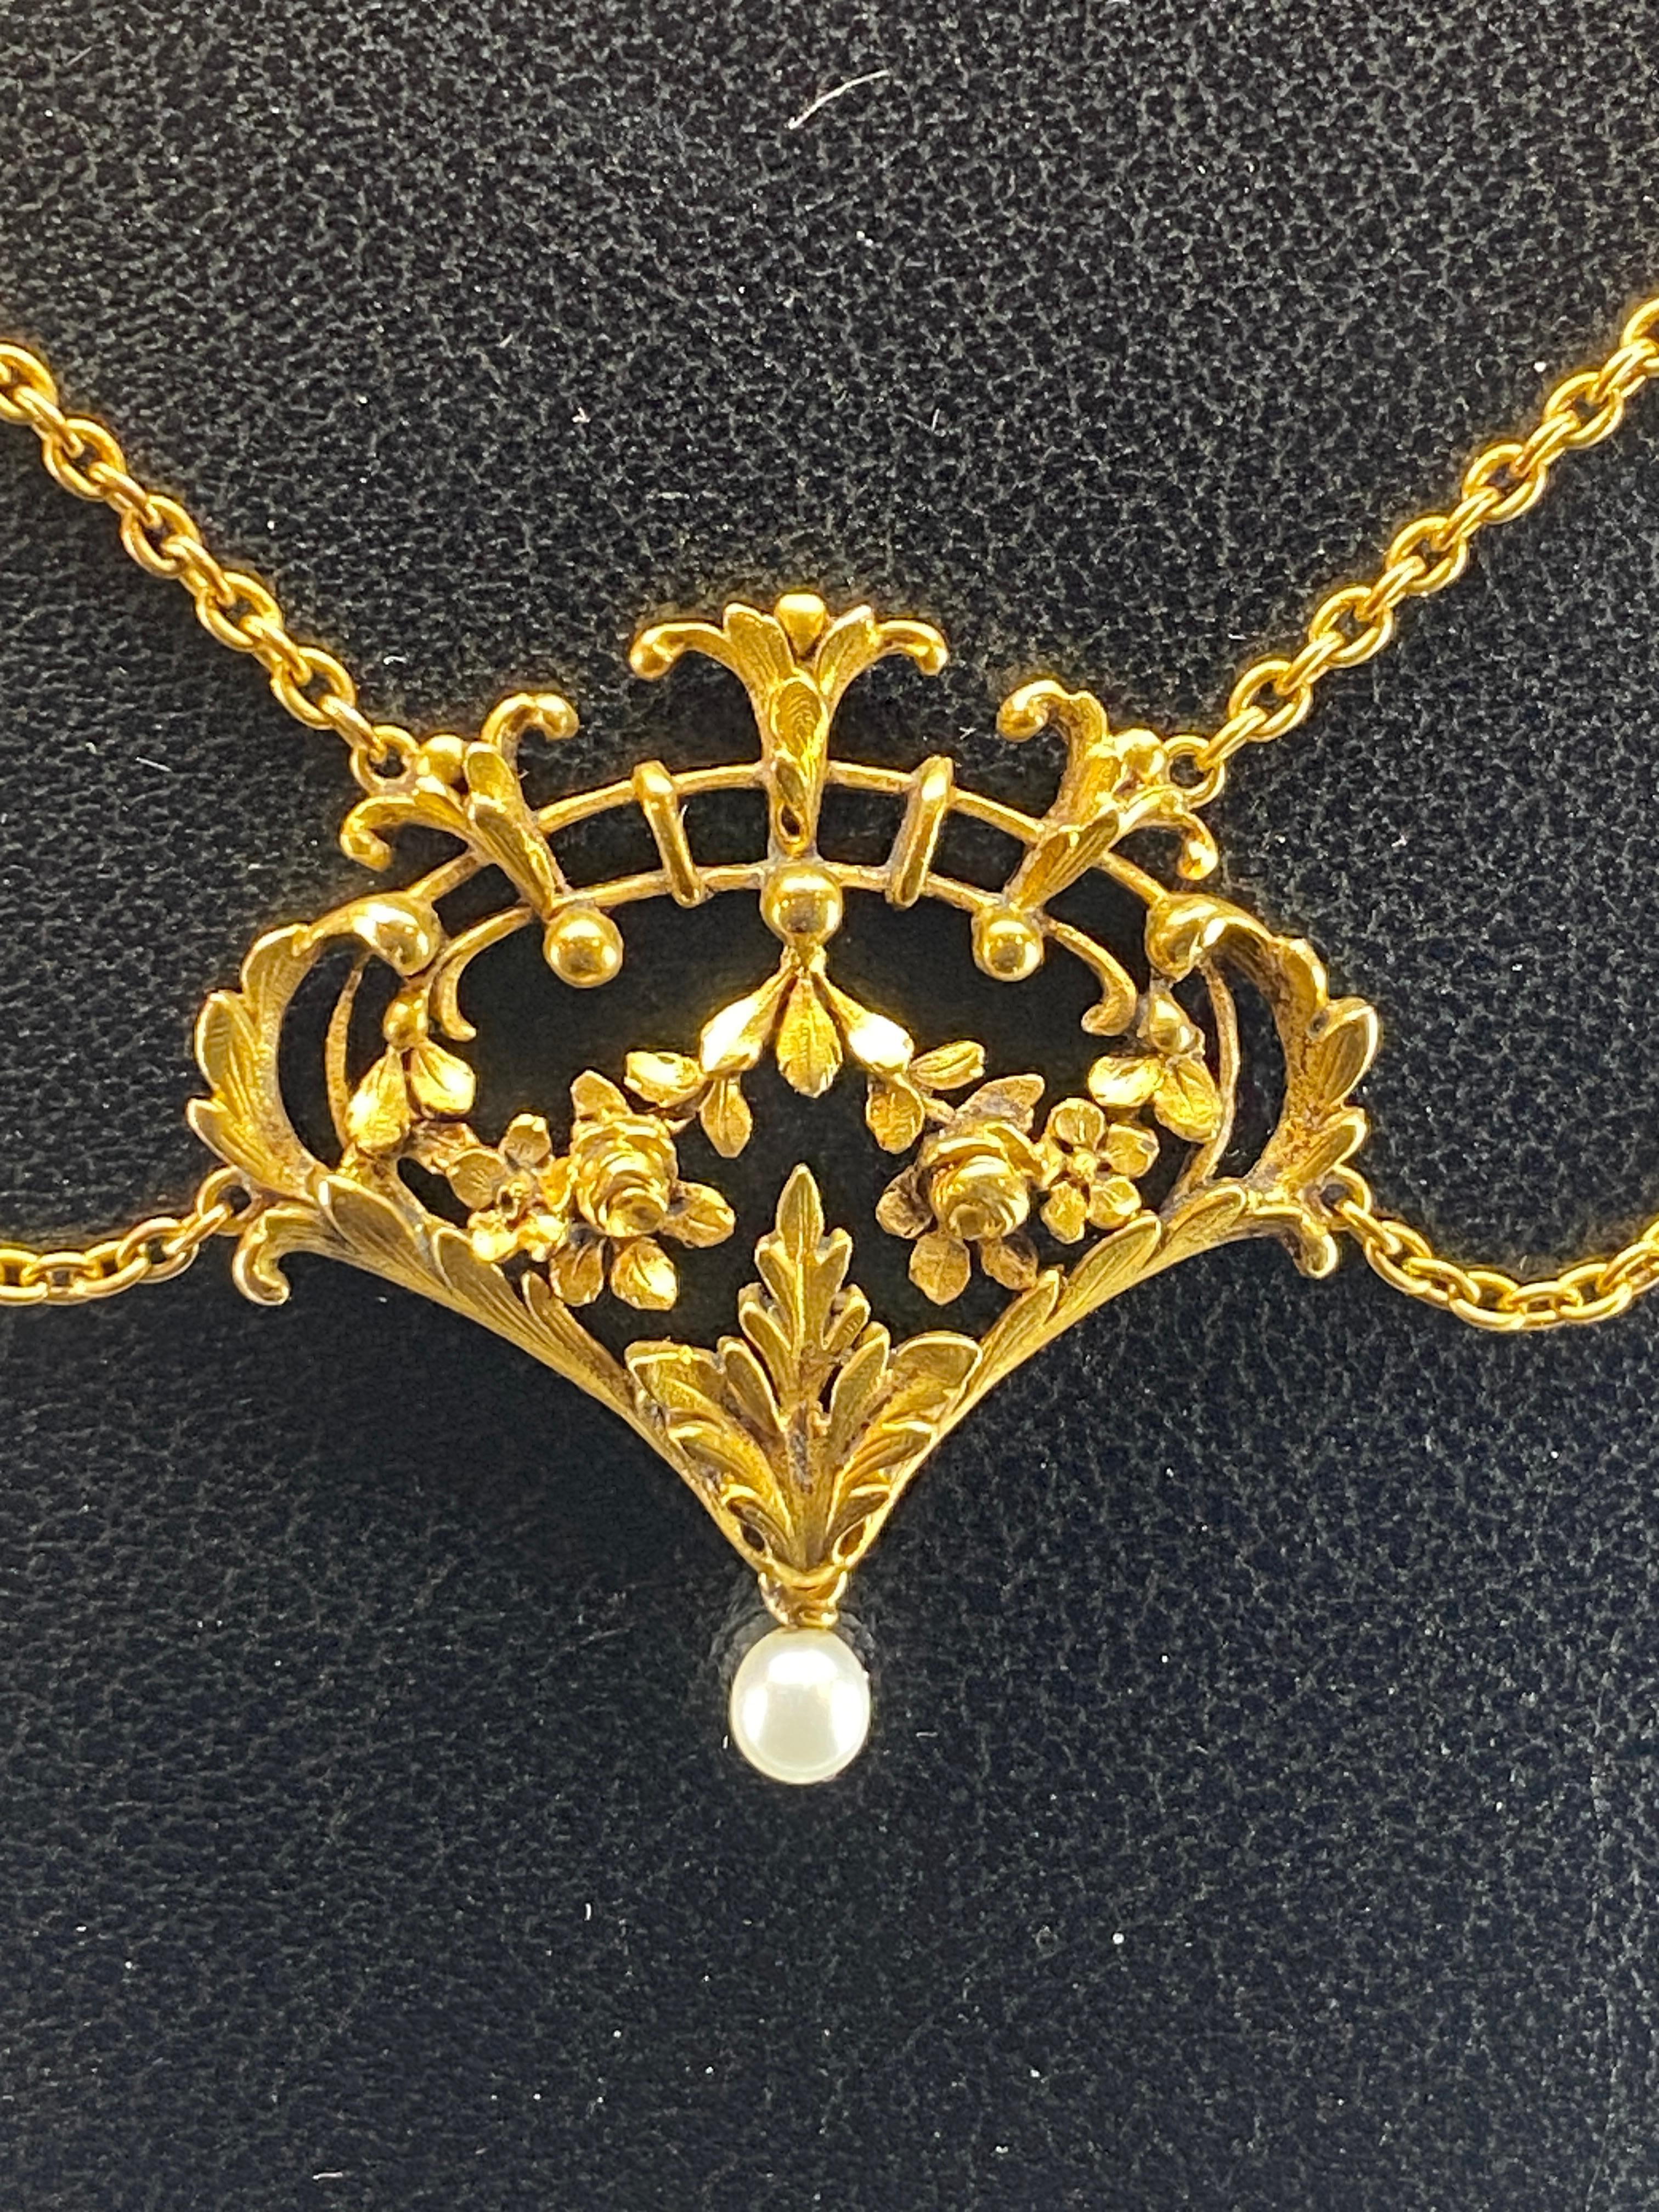 Magnifique collier en or 18 carats ( poinçon tête d’aigle ) d’ époque fin 19 ème siècle. Il est constitué de 5 motifs principaux ajourés à décor de fleurs, de feuillages, de treillage en arceaux et de perles d’or. Chaque élément retient en pampille